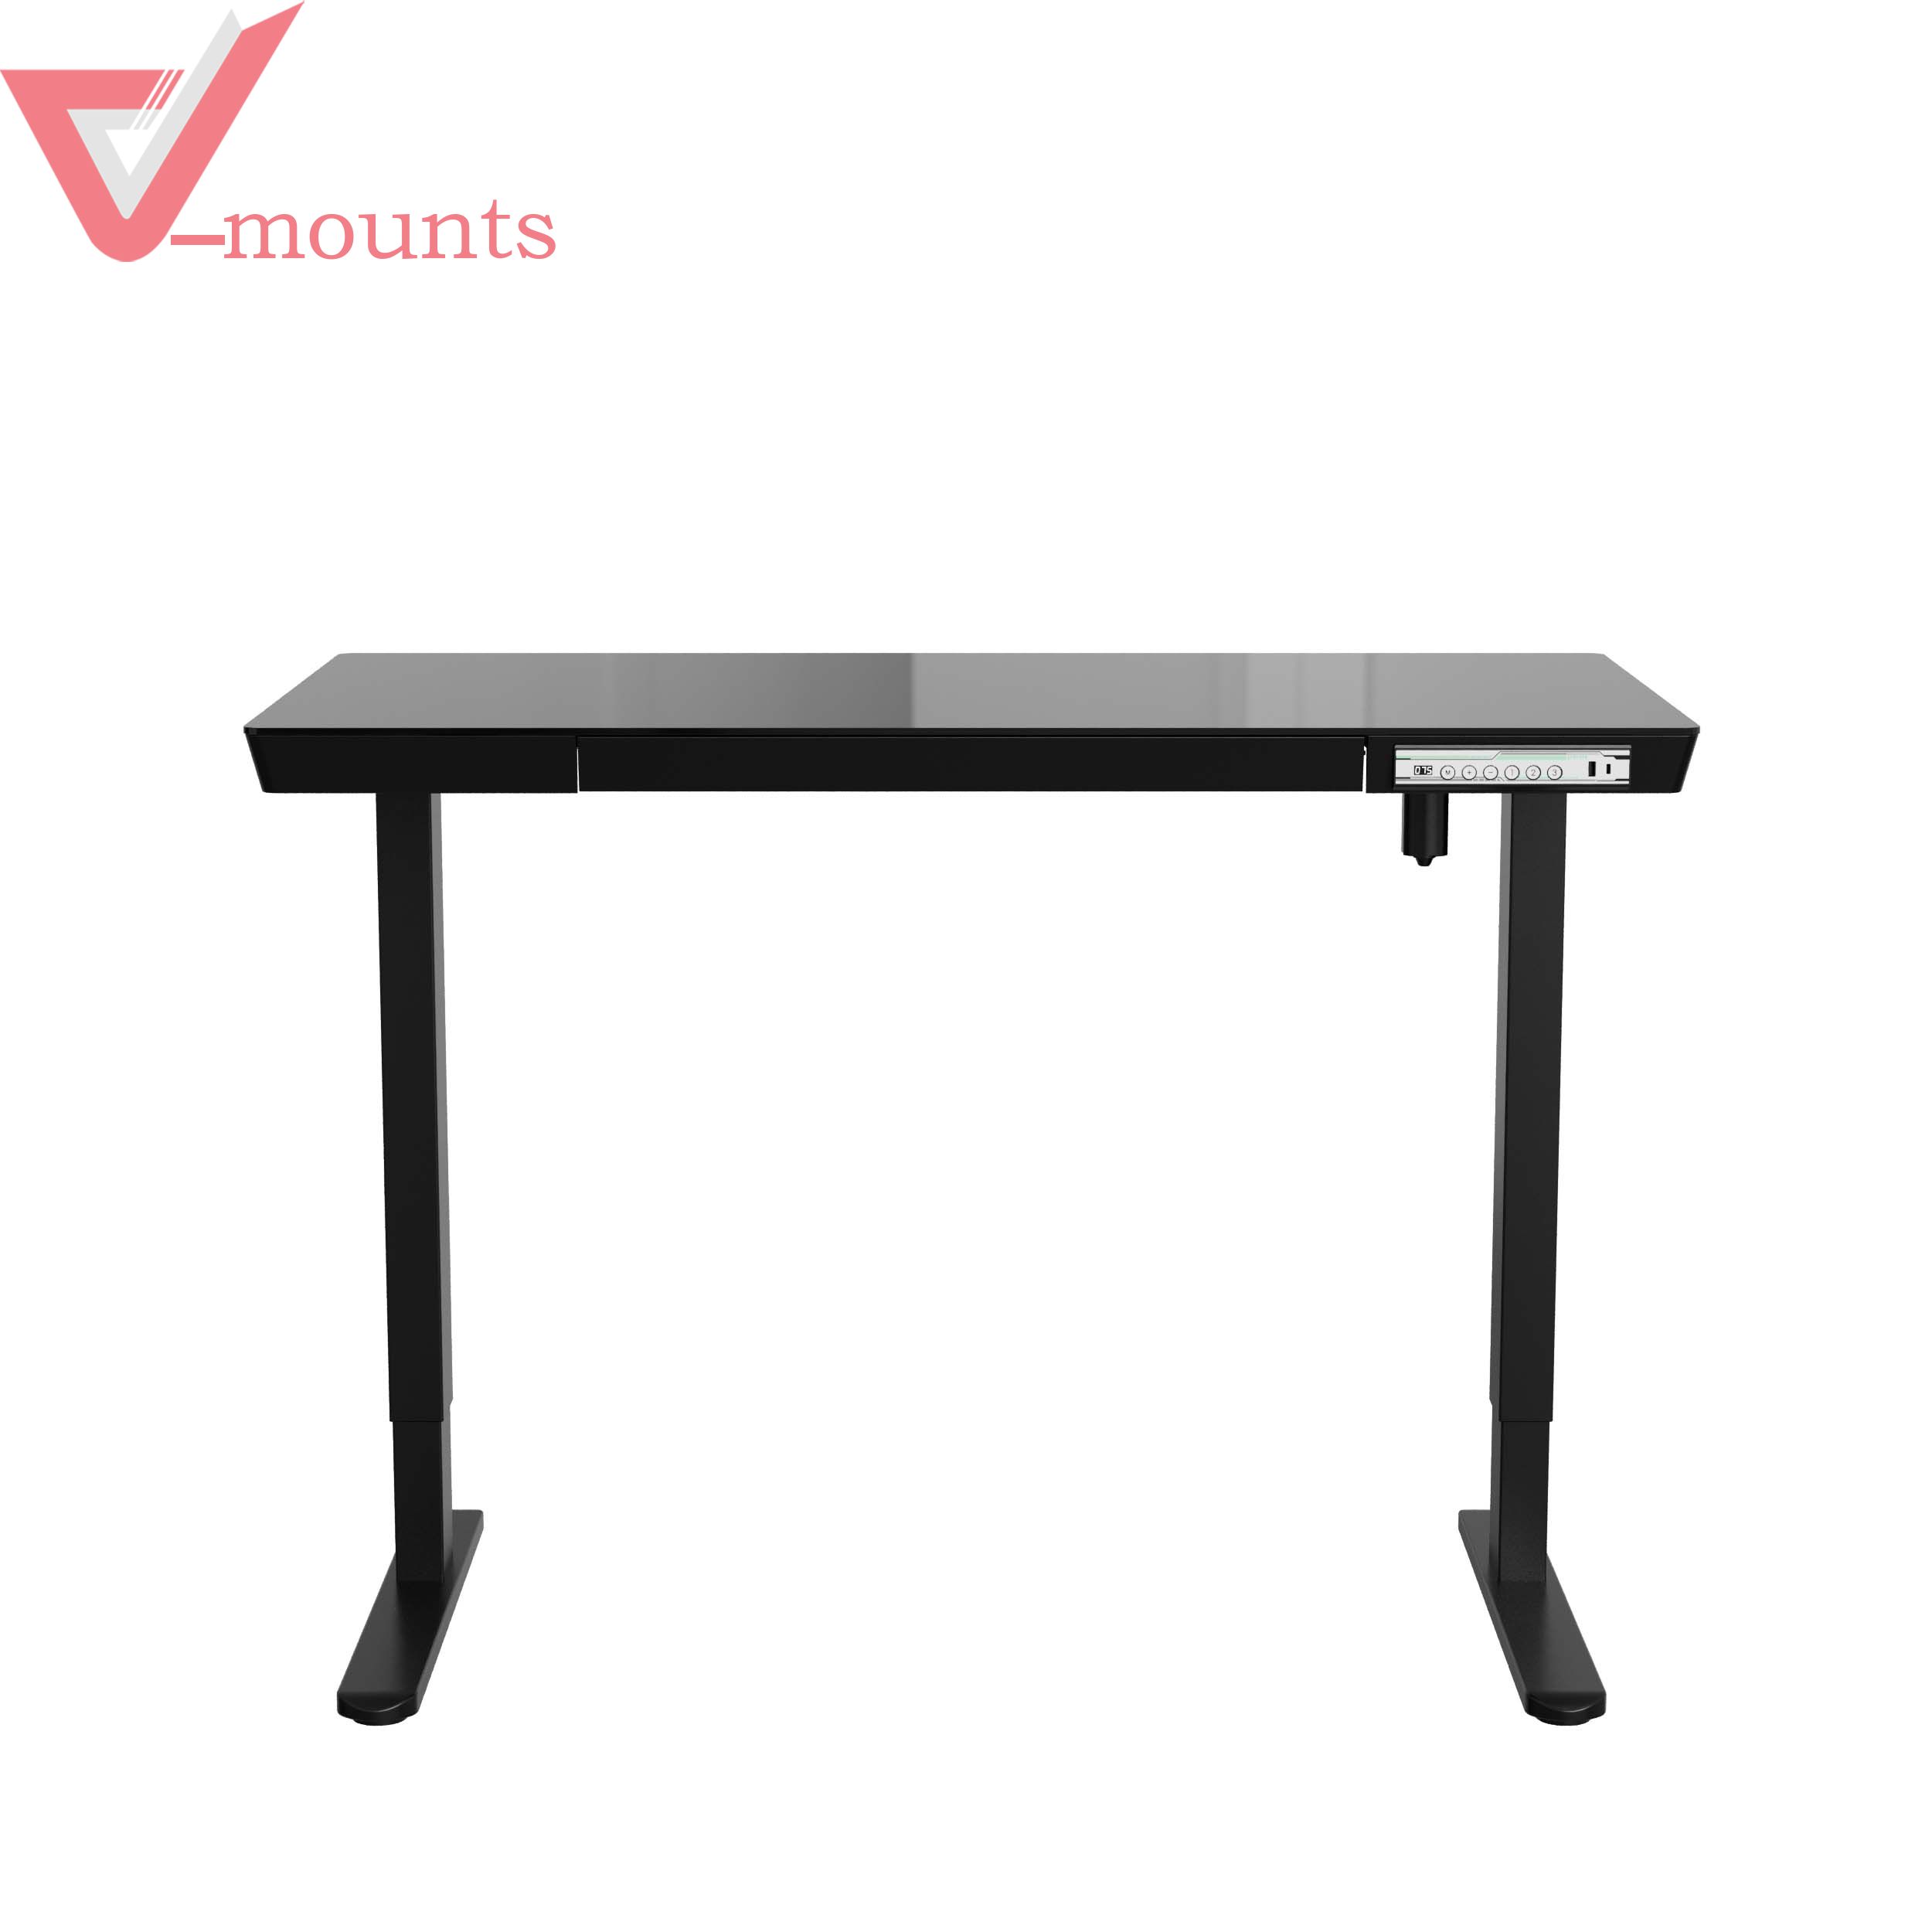 V-mounts SpaceErgo Electric Height Adjustable Tempered Glass Desk VM-JSD5-01-G4